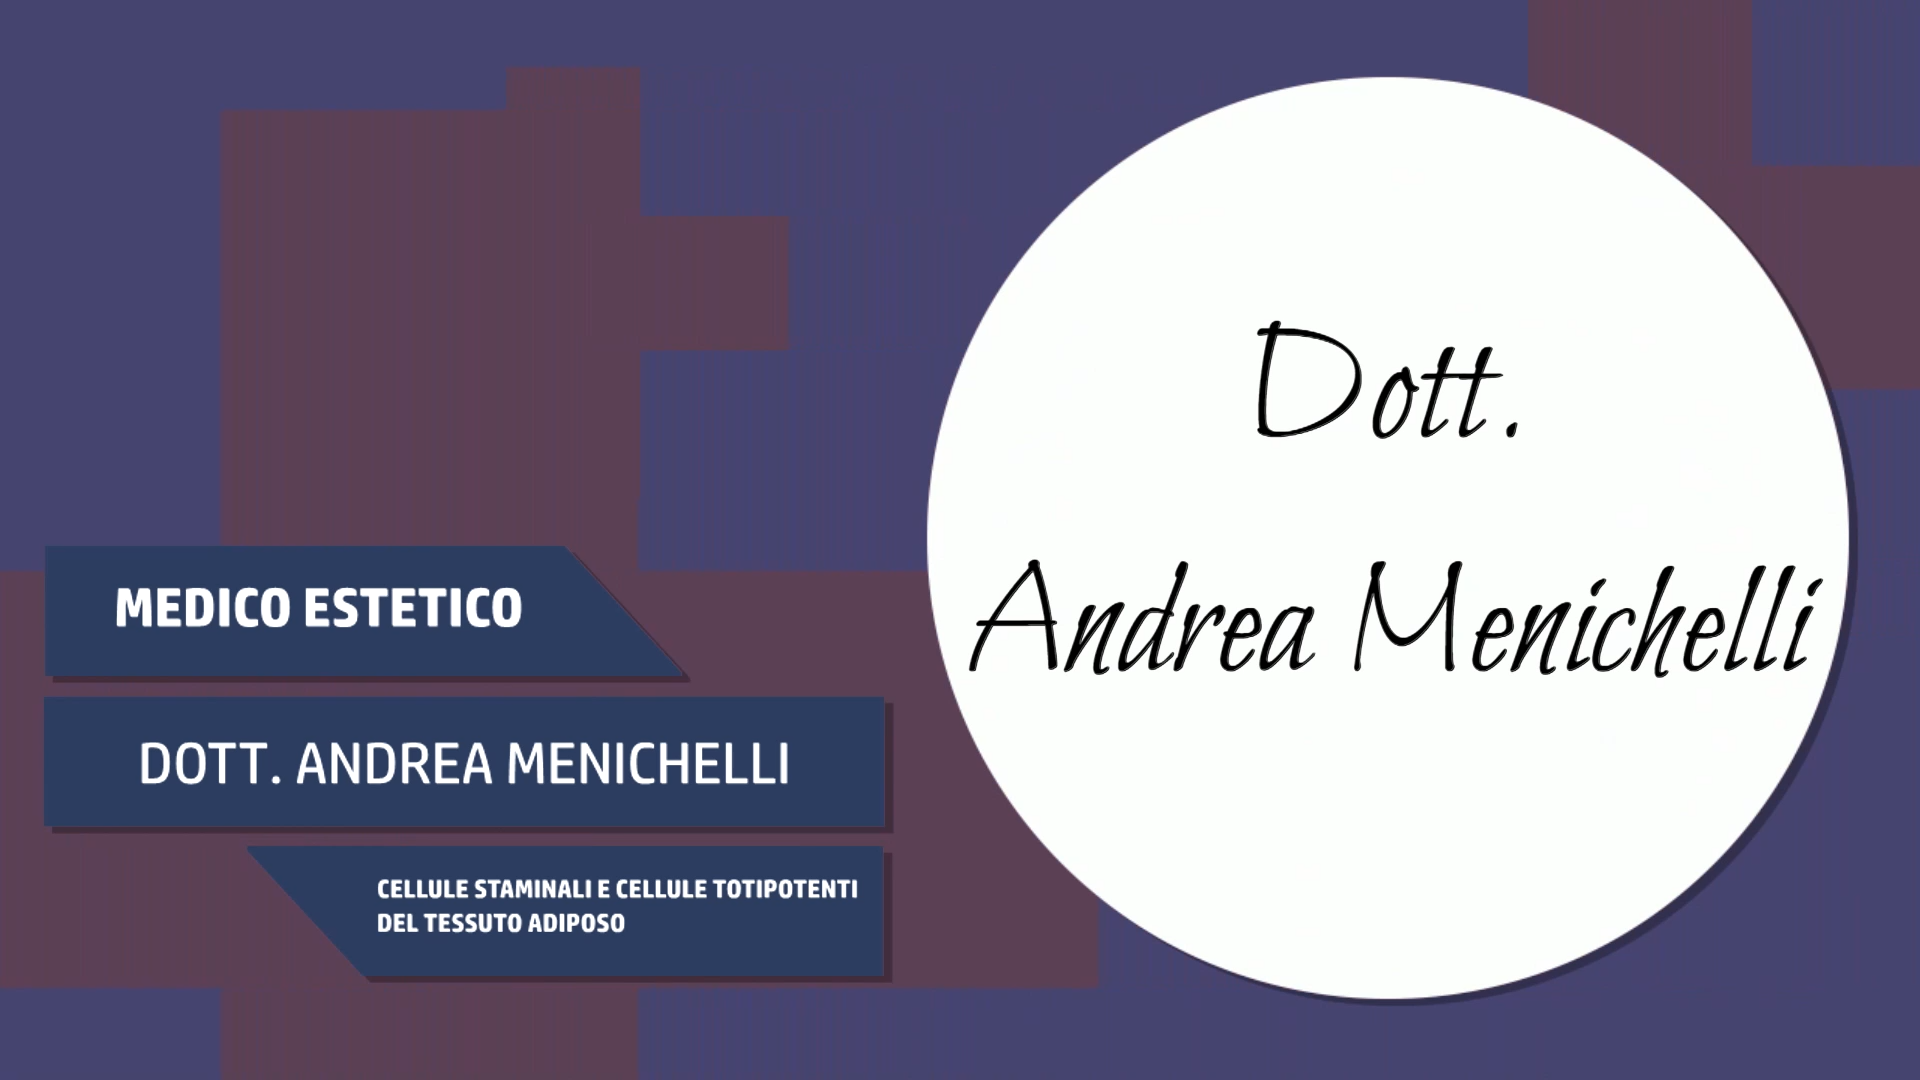 Intervista al Dott. Andrea Menichelli – Cellule staminali e cellule totipotenti del tessuto adiposo